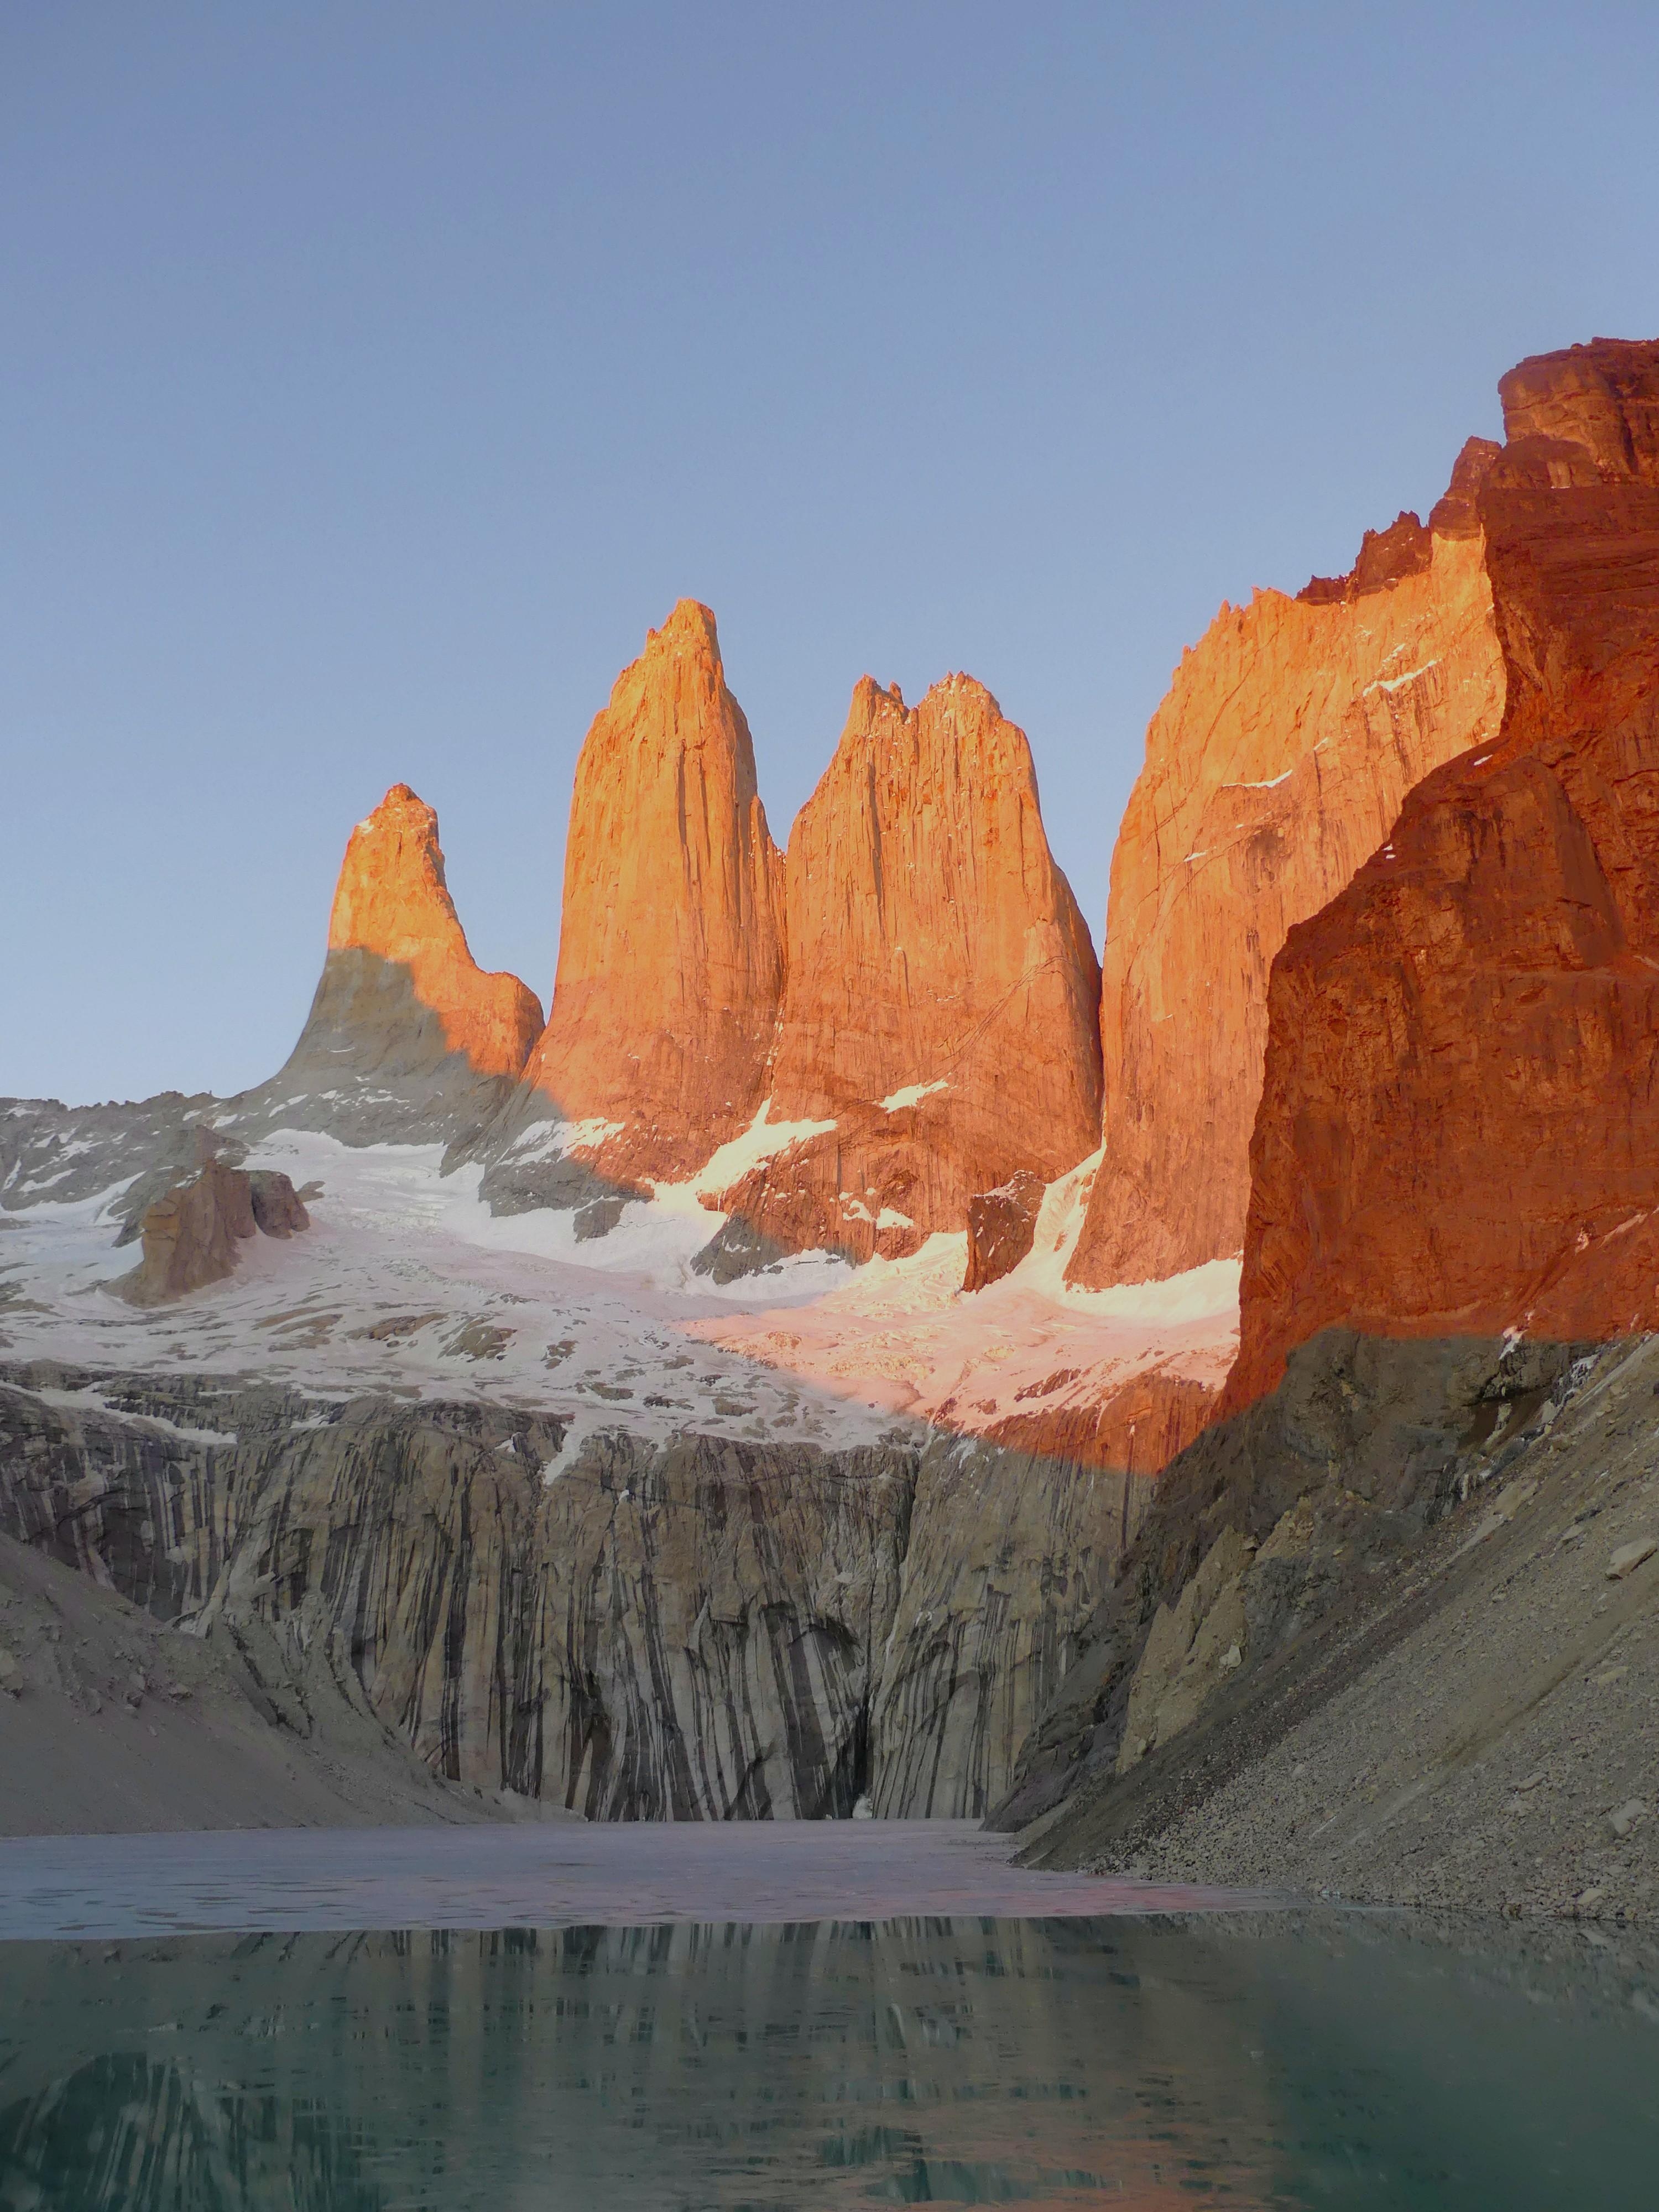 4 Wochen Backpacking durch Patagonien, gehört auf jeden Fall zu einem! 💕🌎⛰️❄️☀️
#meinschönsterurlaub #travelchallenge